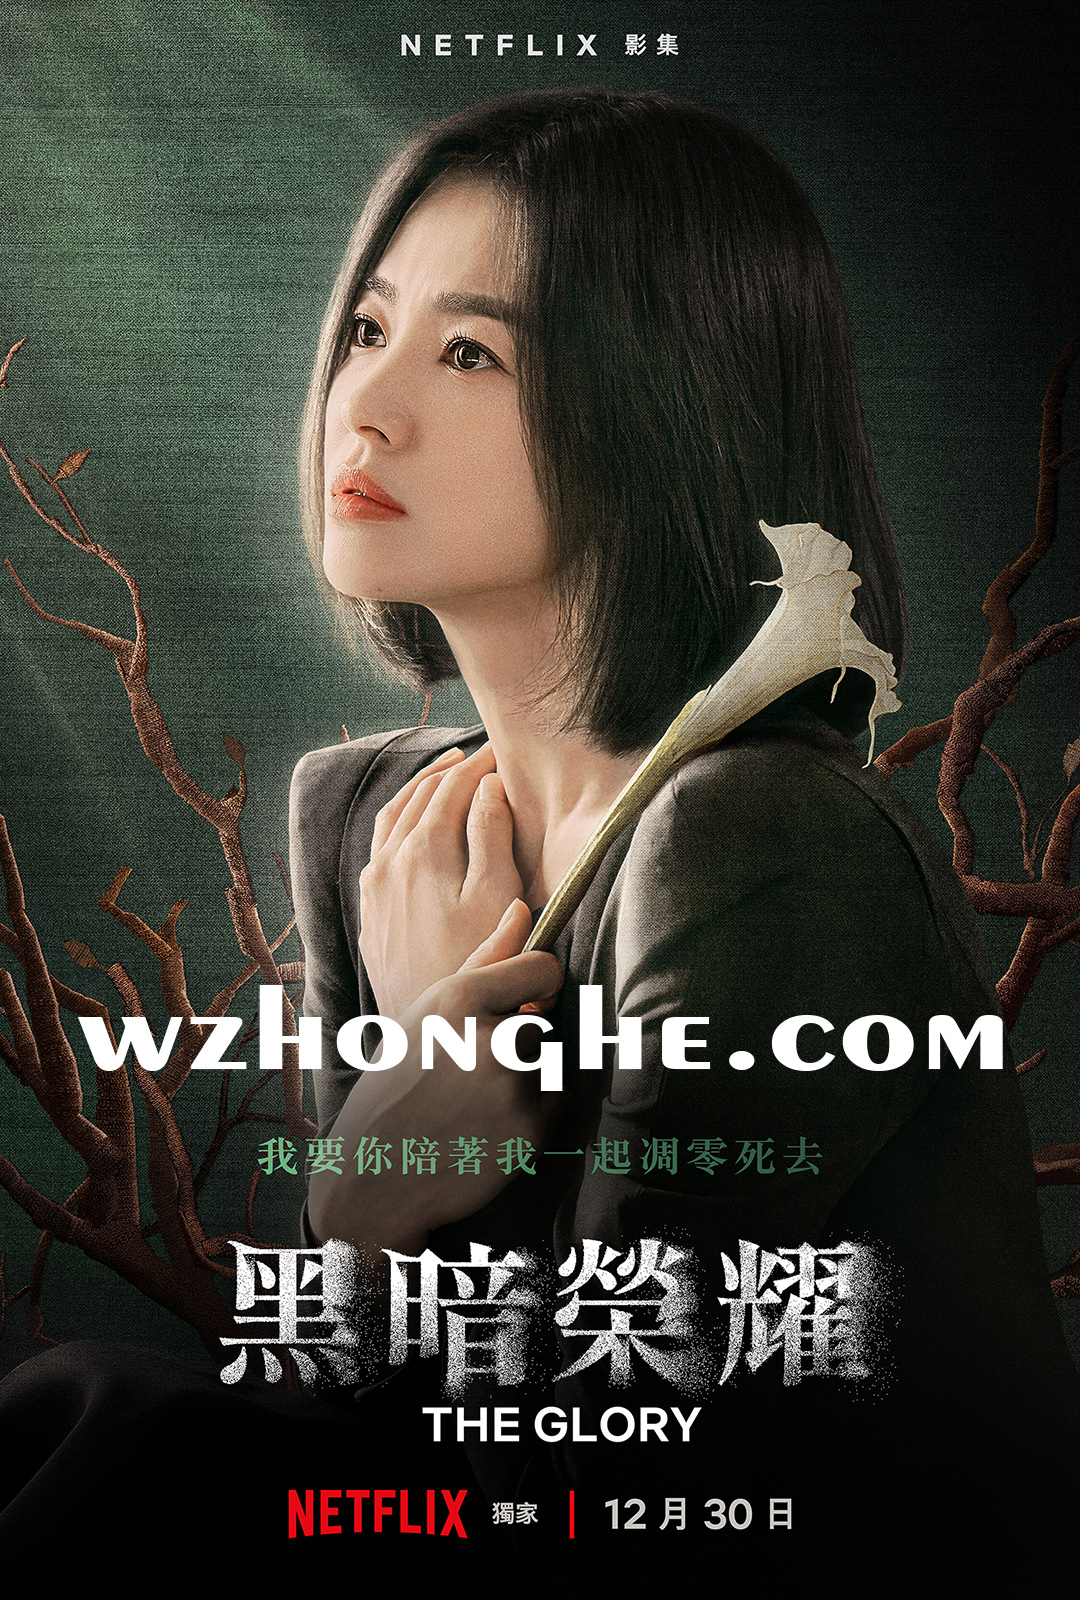 《黑暗荣耀1》- 无中和wzhonghe.com -1